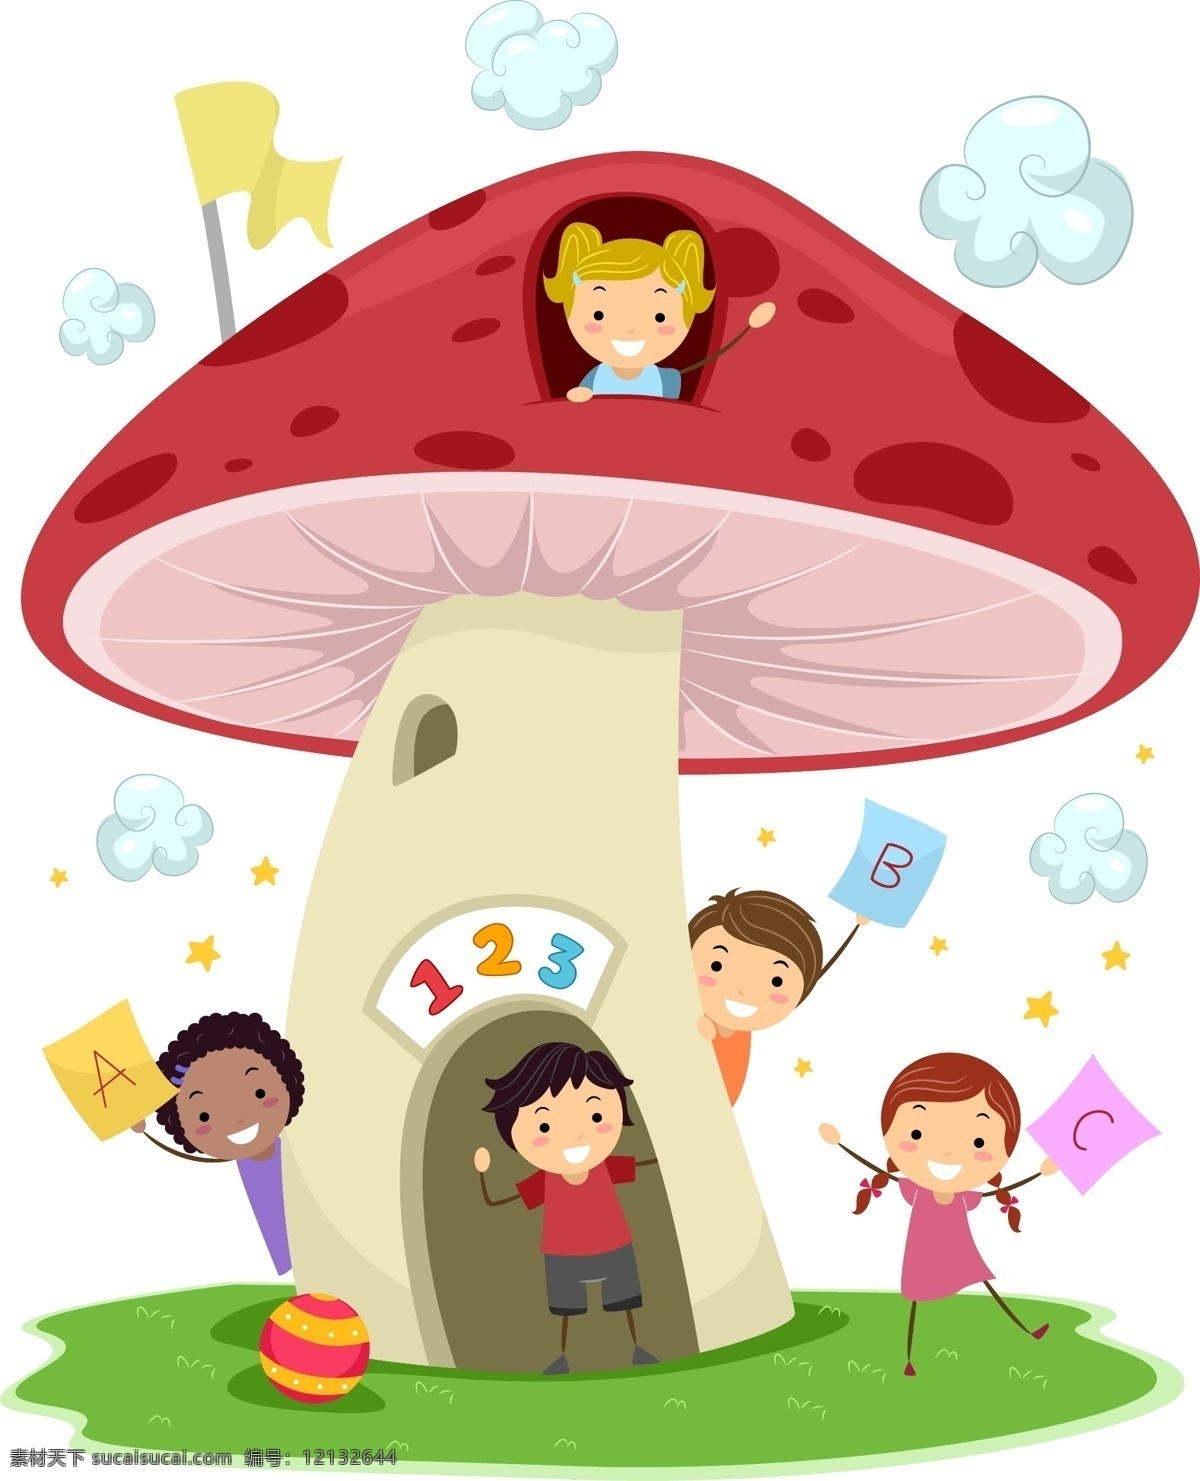 卡通 动物 儿童 蘑菇 房子 矢量 卡通动物 蘑菇房子 大红色 矢量素材